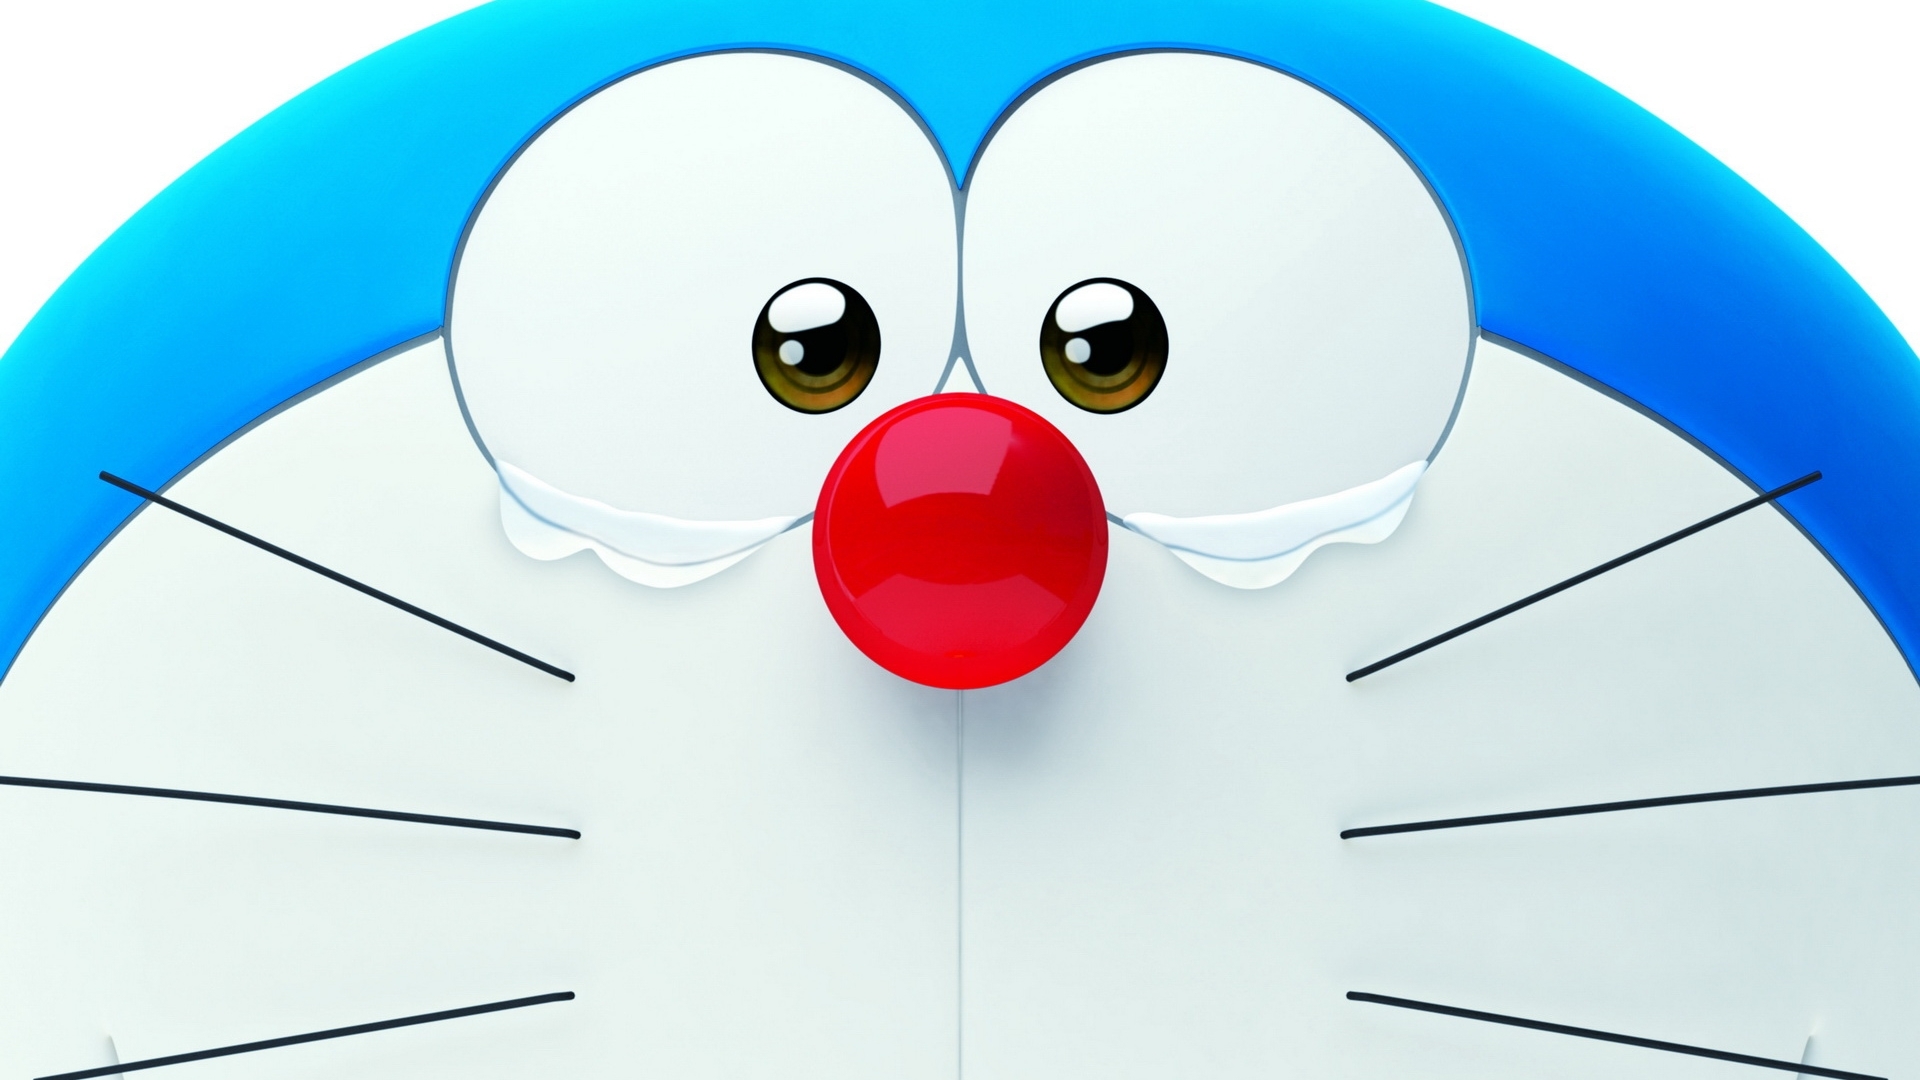 Free Download Pc Pc 19x1080 For Your Desktop Mobile Tablet Explore 95 Doraemon 3d Wallpaper 17 Doraemon 3d Wallpaper 17 3d Doraemon Wallpaper Doraemon 3d Wallpaper 16